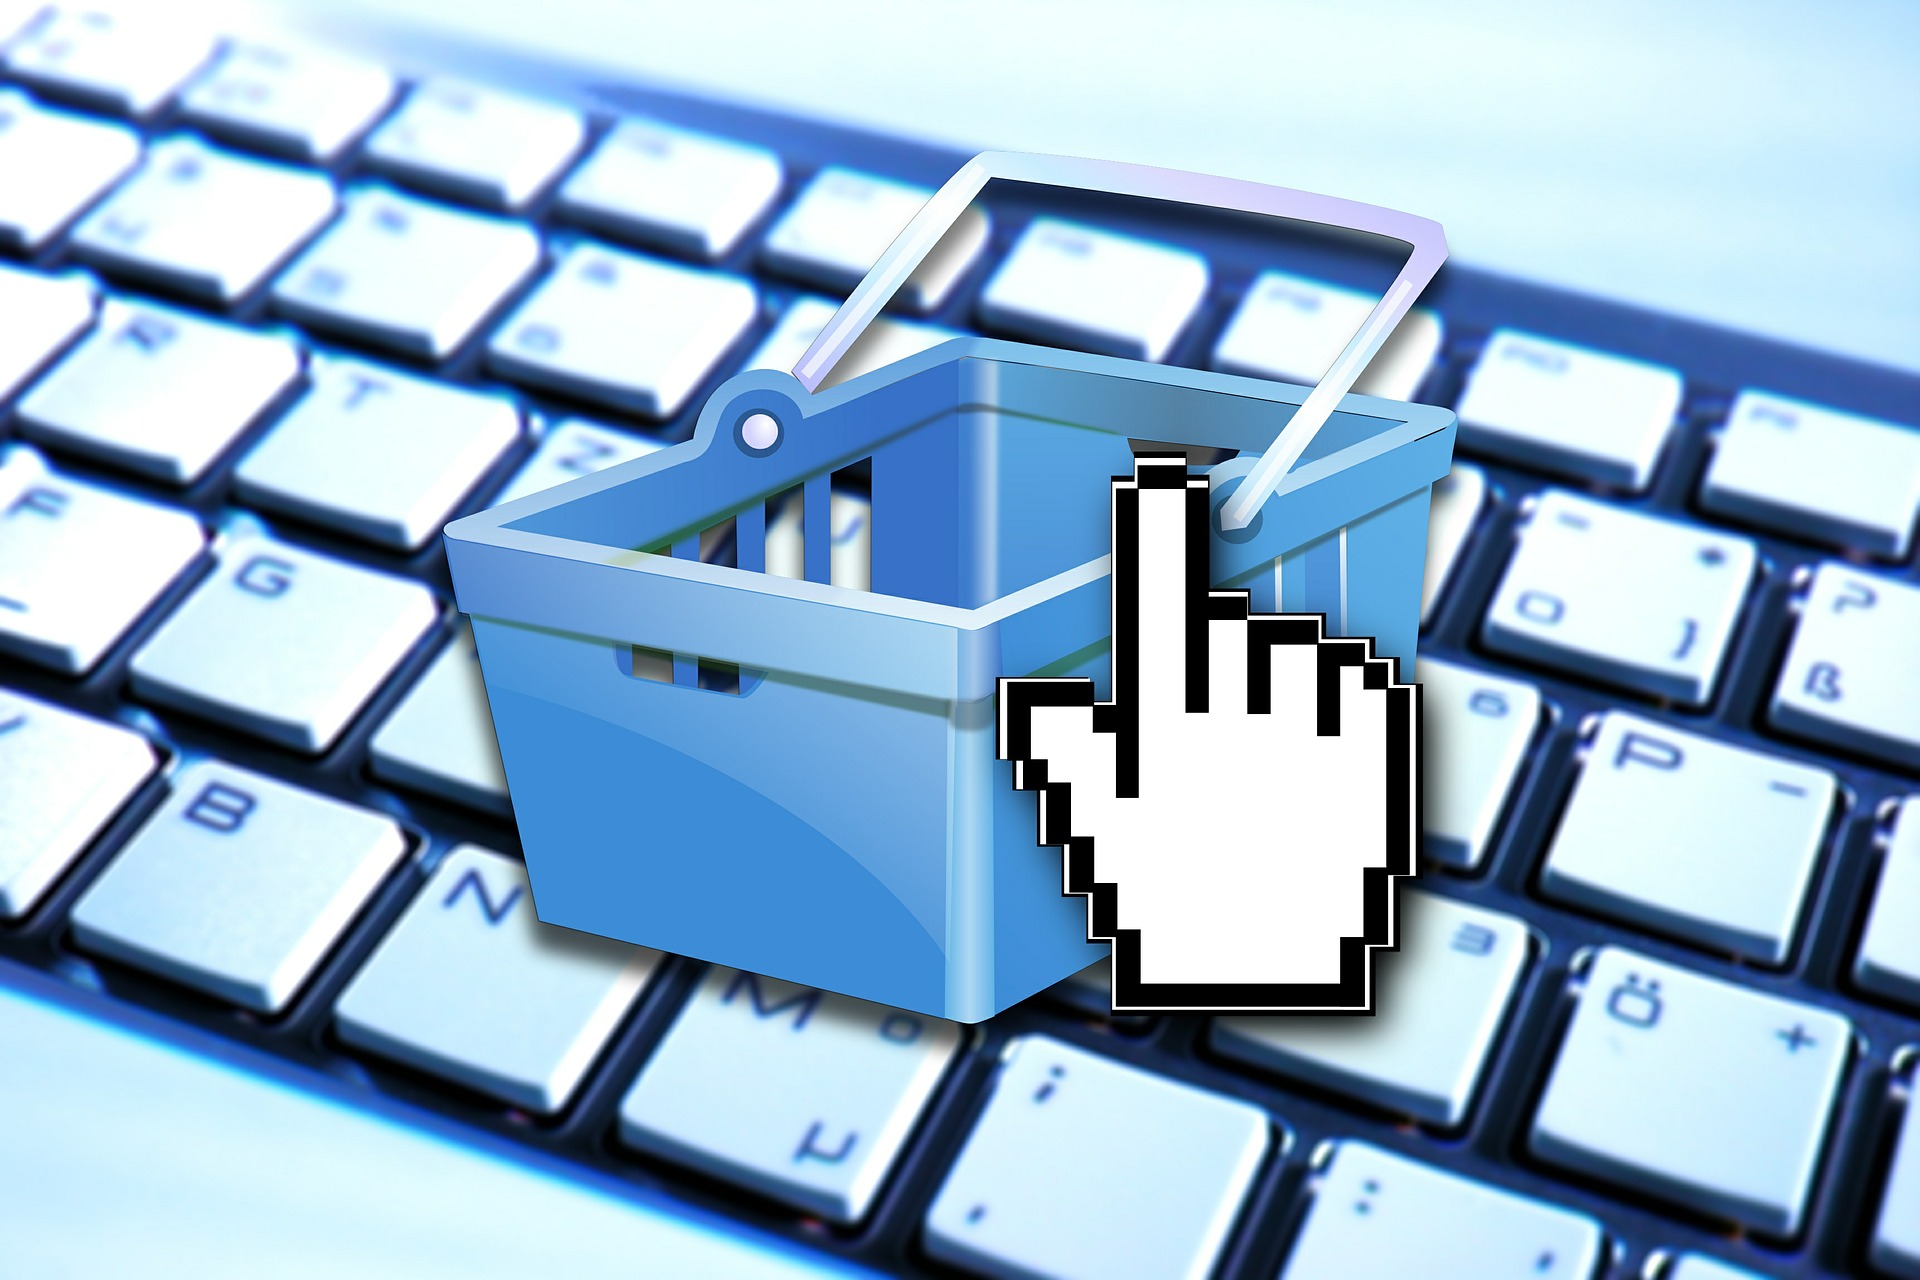 Analyse zur Kundenfreundlichkeit von Online-Shops bei Retouren